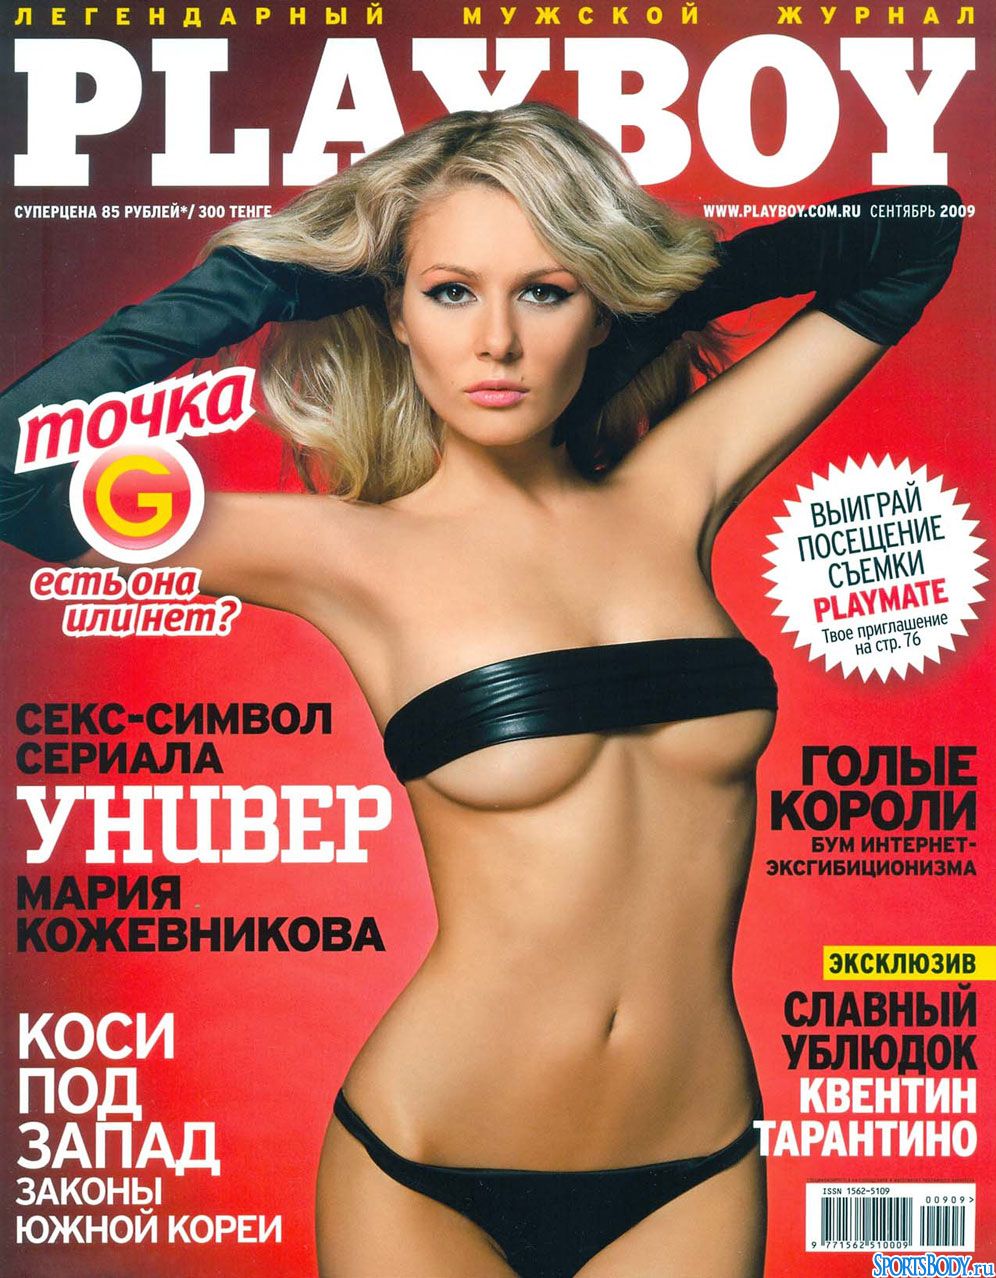 http://parodynews.files.wordpress.com/2011/12/03_maria_kozhevnikova_b.jpg